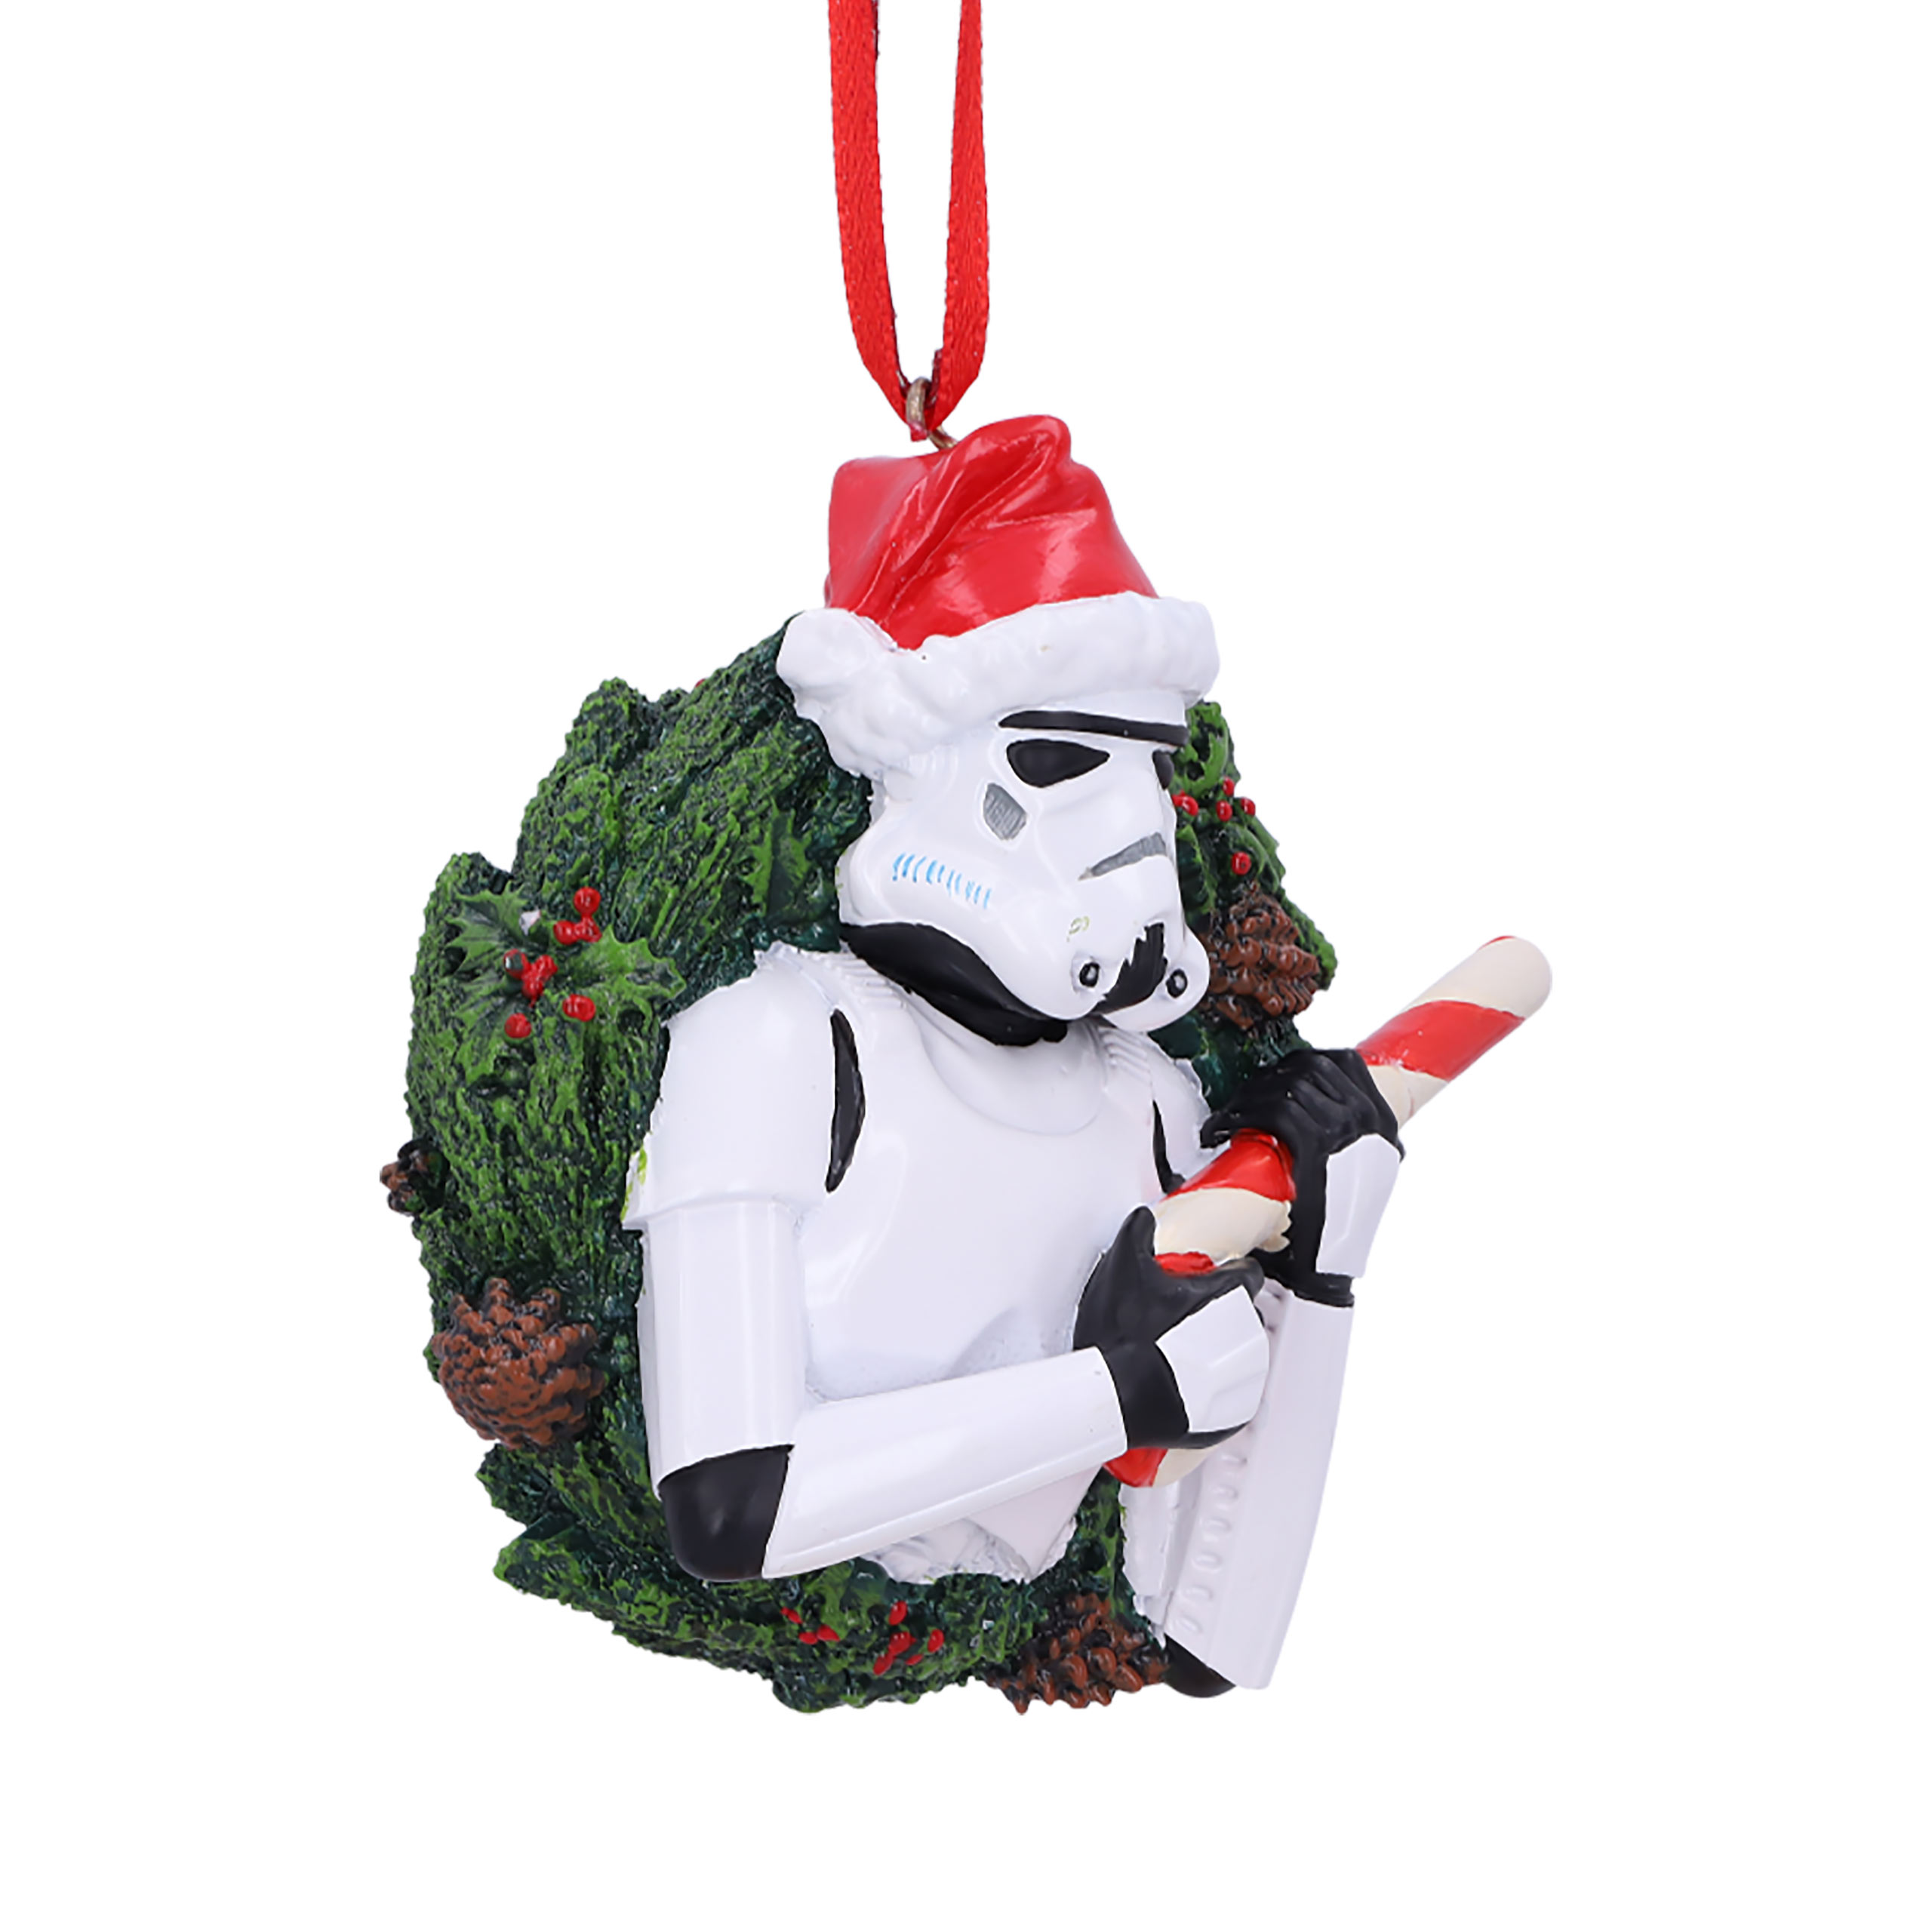 Stormtrooper Kerstkrans Kerstboomversiering - Star Wars